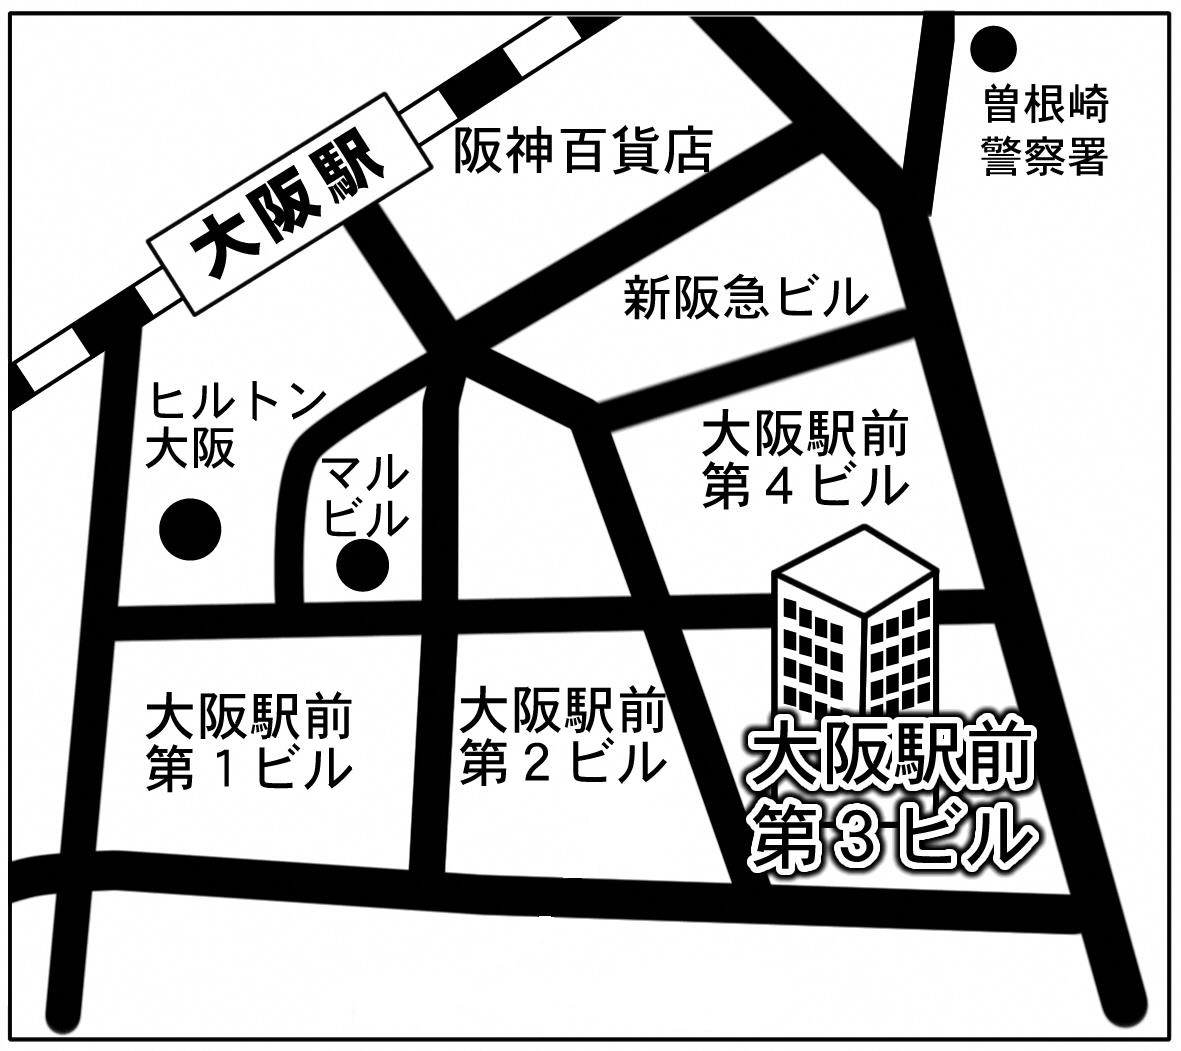 関西本部（大阪駅前第３ビル）の場所